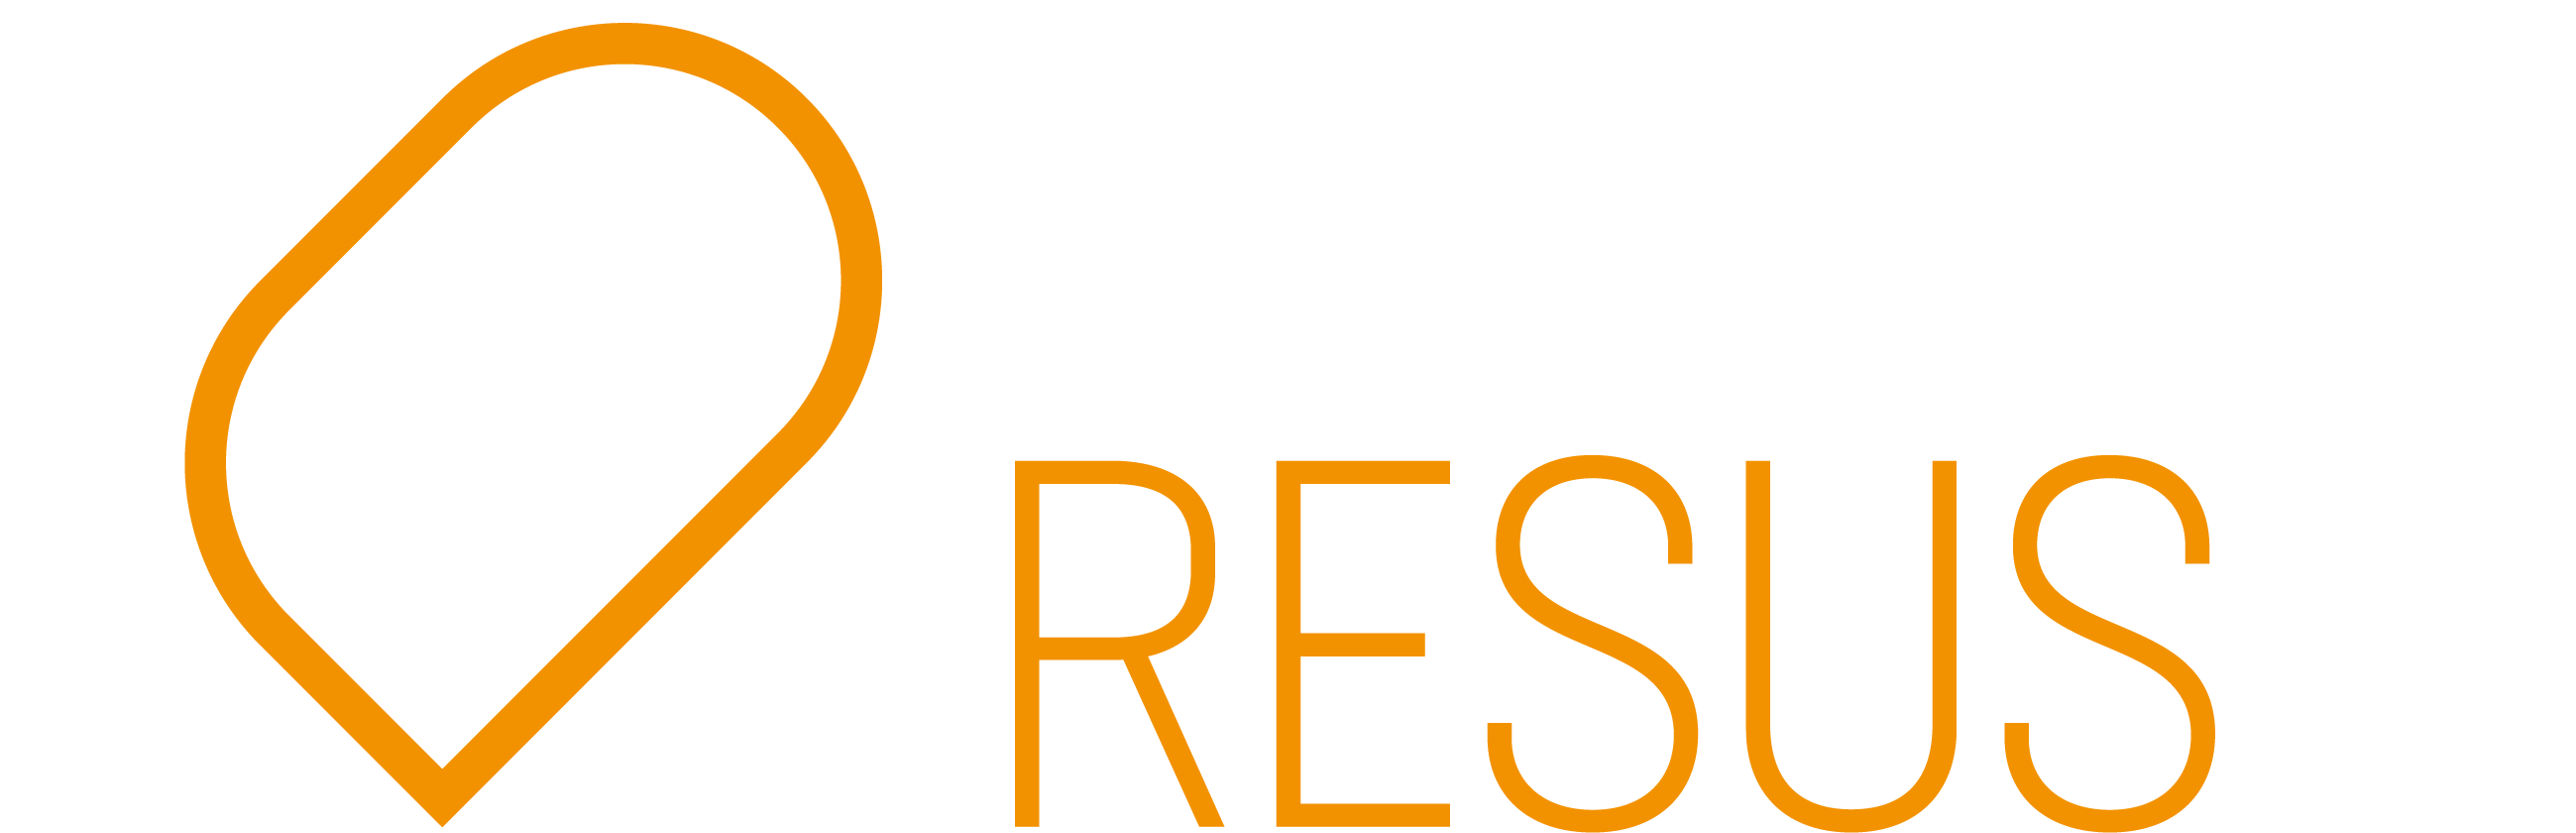 Trauma Resus logo